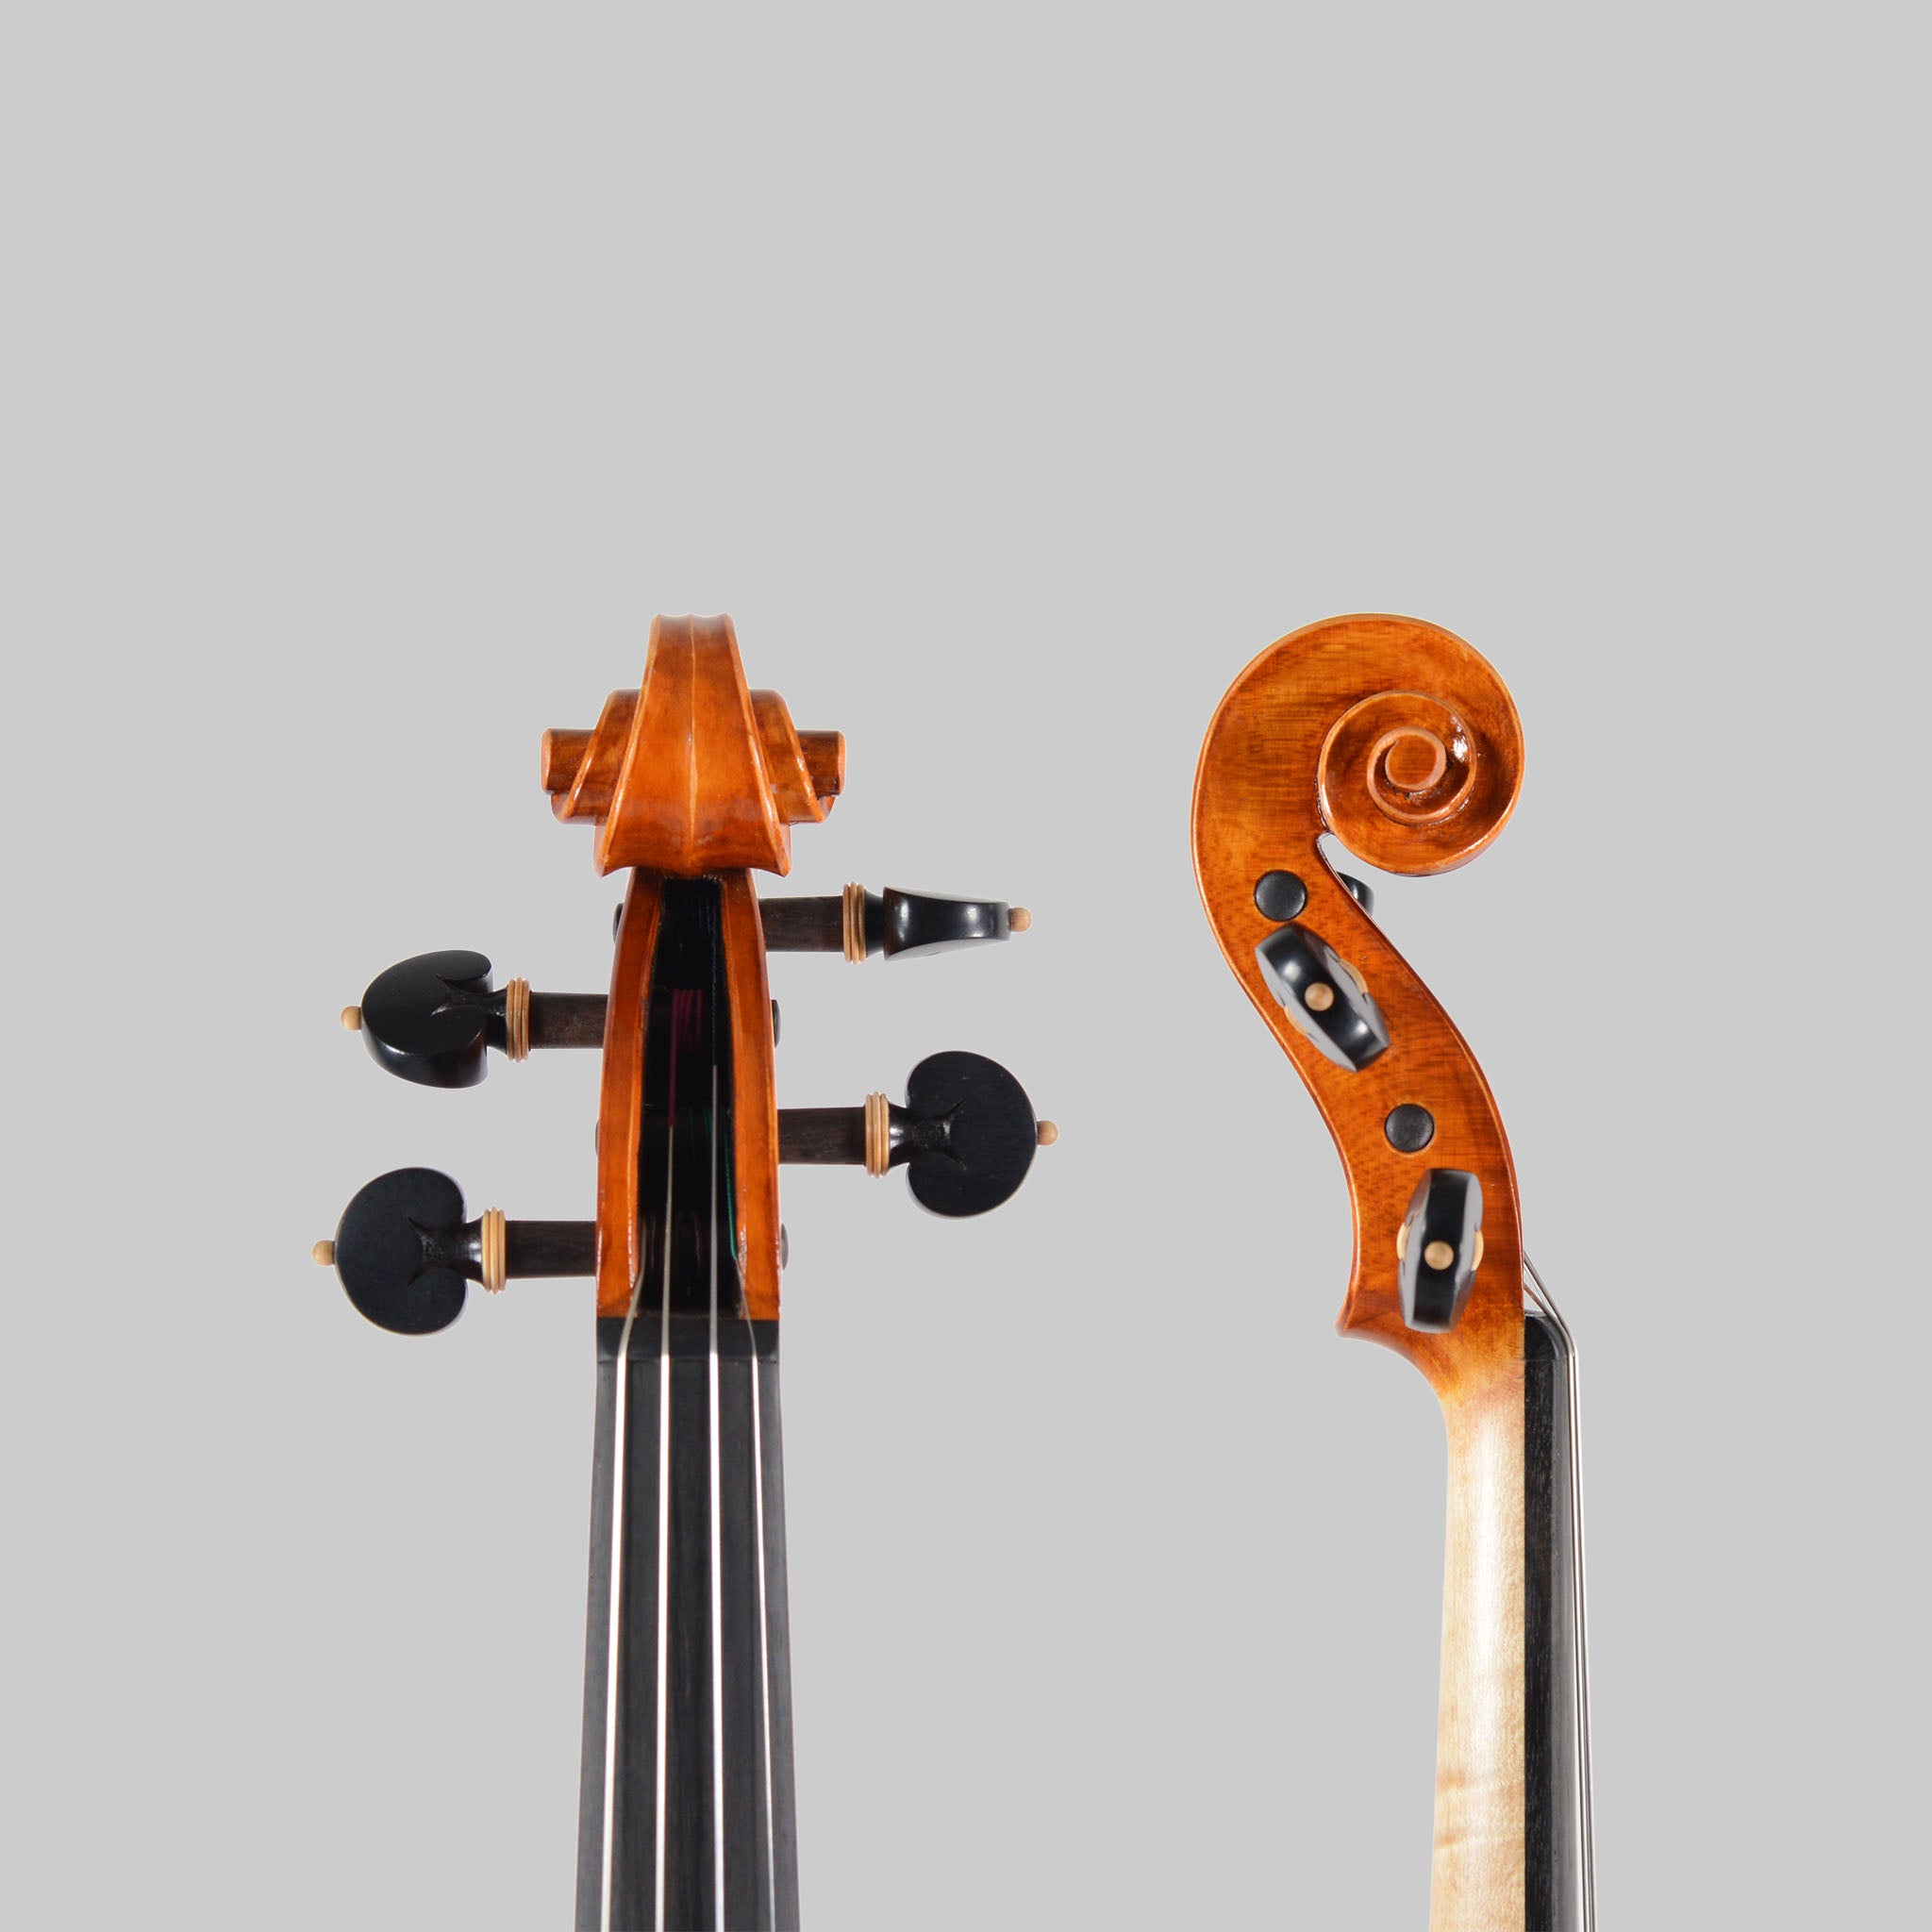 Luca Zerilli, Udine Italy 2022, "Milano" Violin